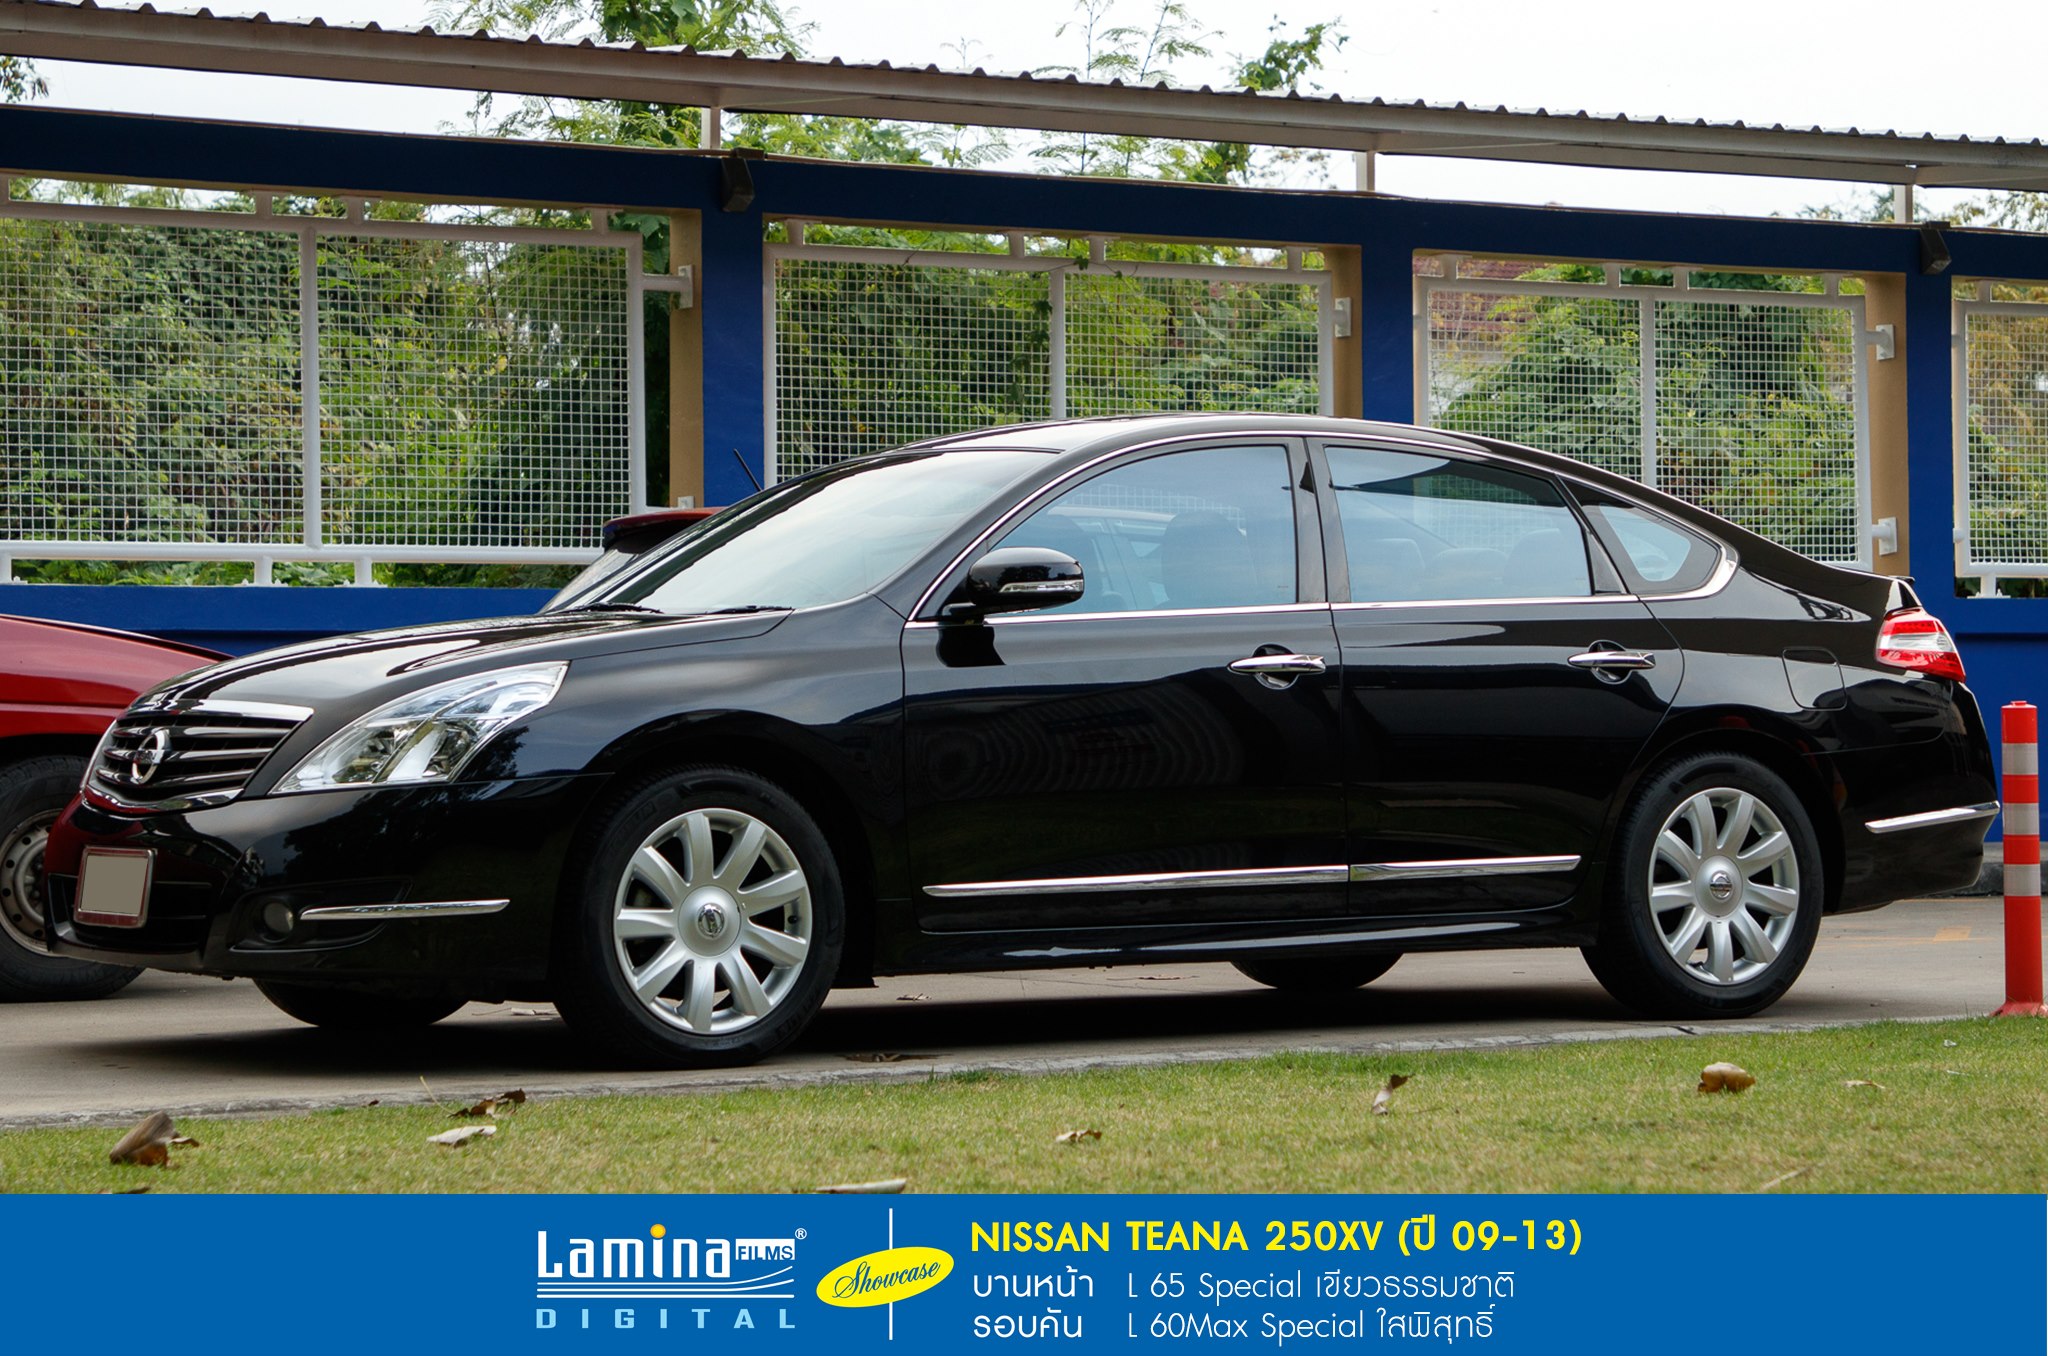 ฟิล์มใสกันร้อน lamina special series Nissan Teana 250xv 7